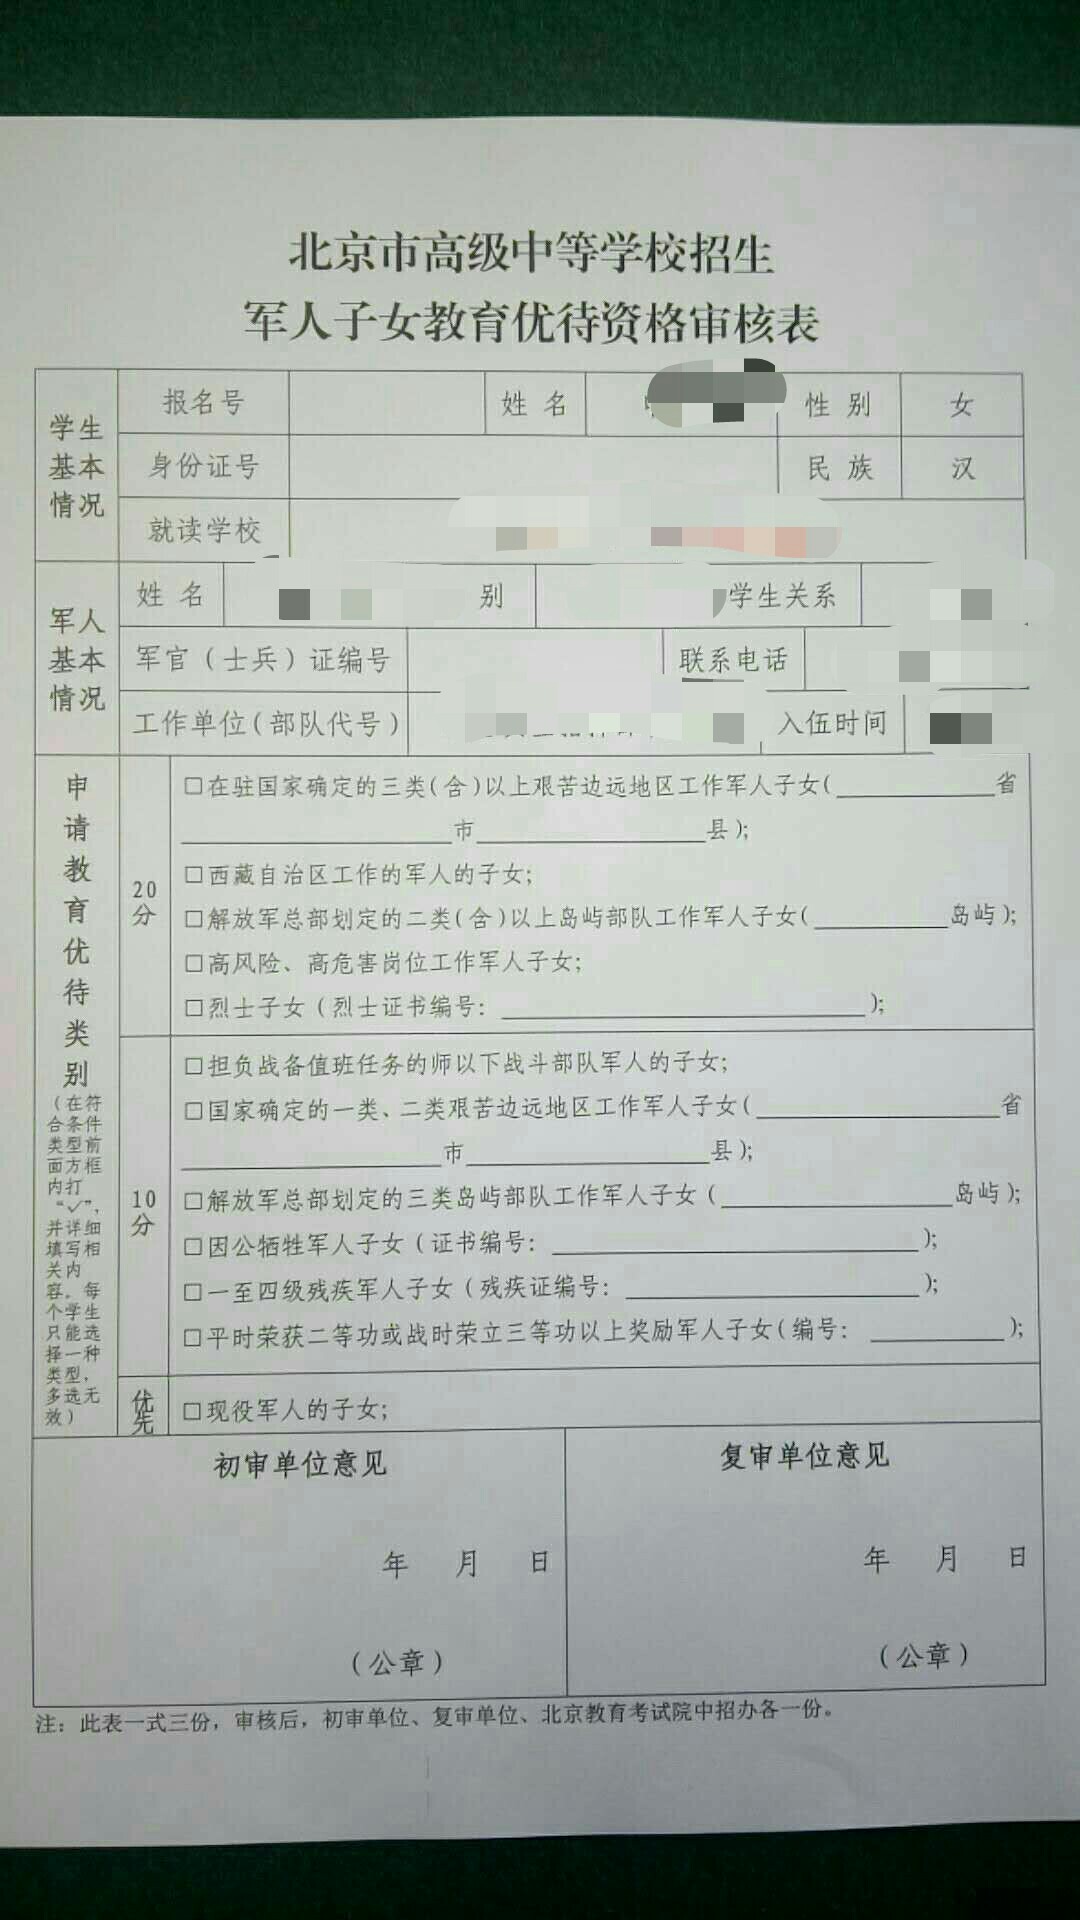 北京市高级中等学校招生军人子女教育优待资格审核表